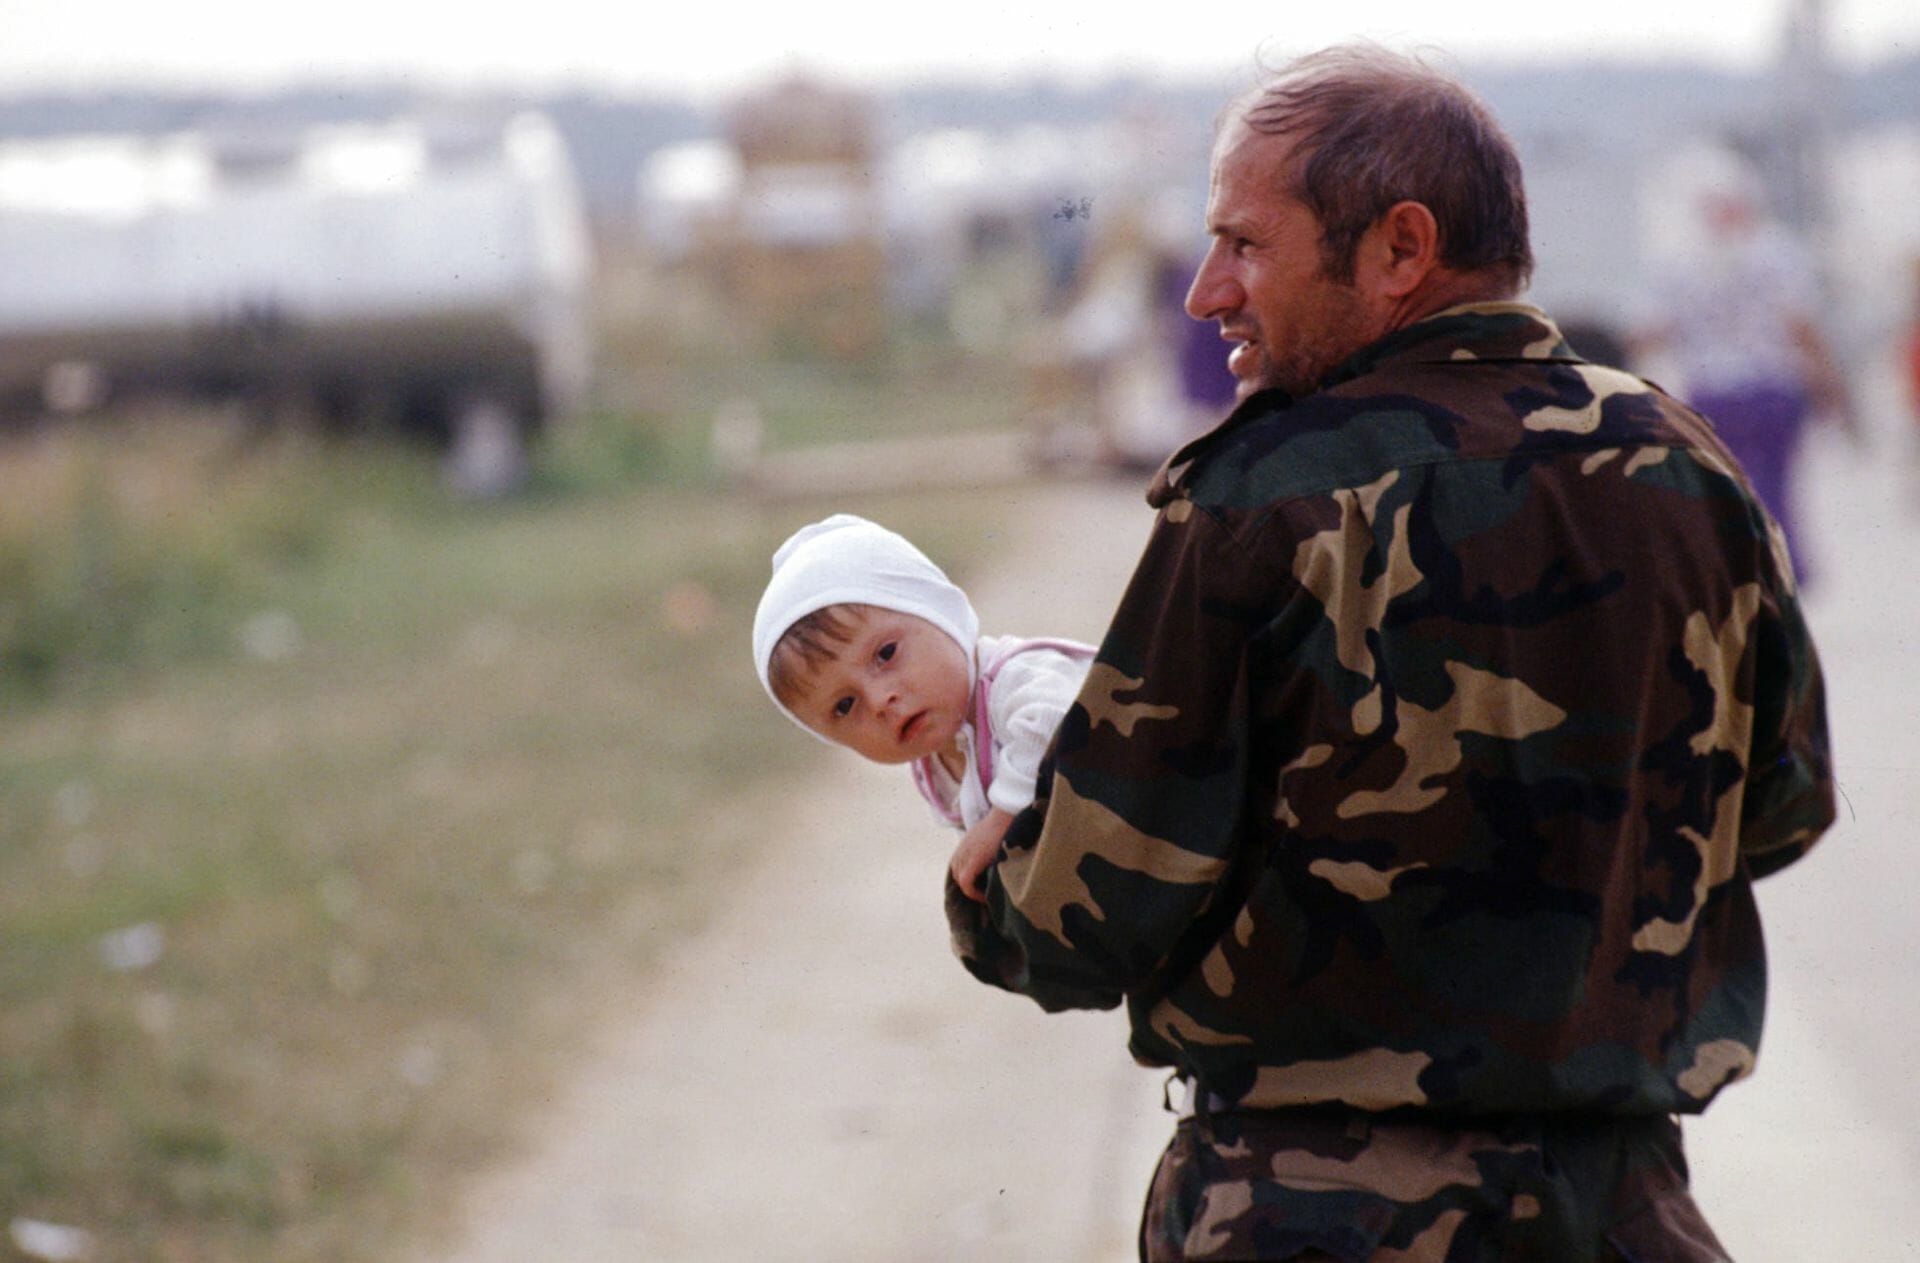 Read more about the article FAKTA: Krigen i Bosnien kostede 100.000 livet